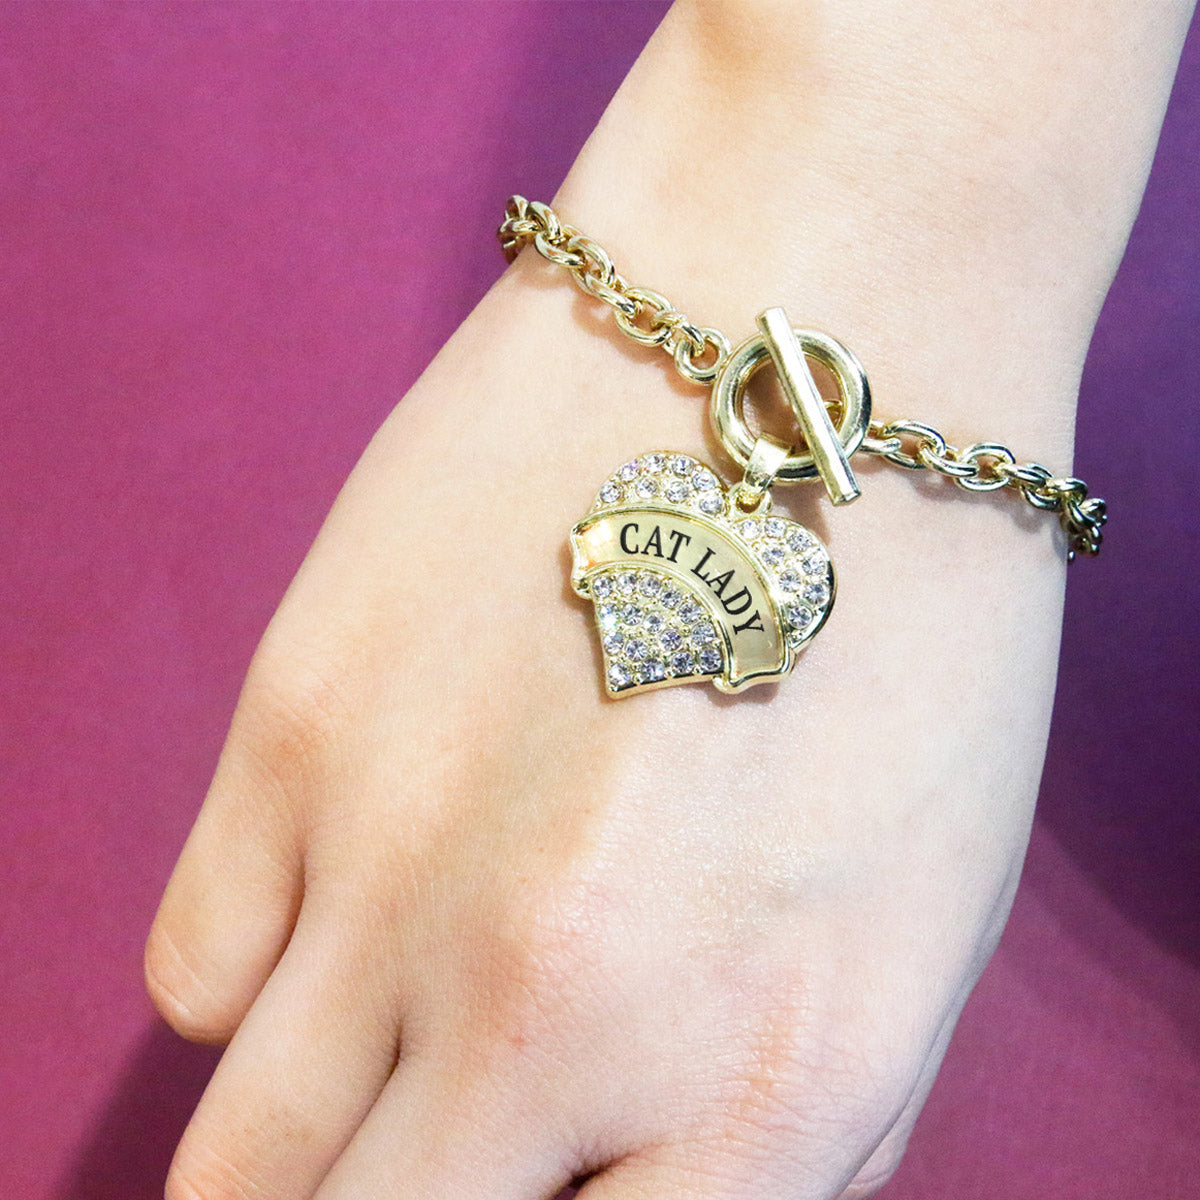 Gold Cat Lady Pave Heart Charm Toggle Bracelet